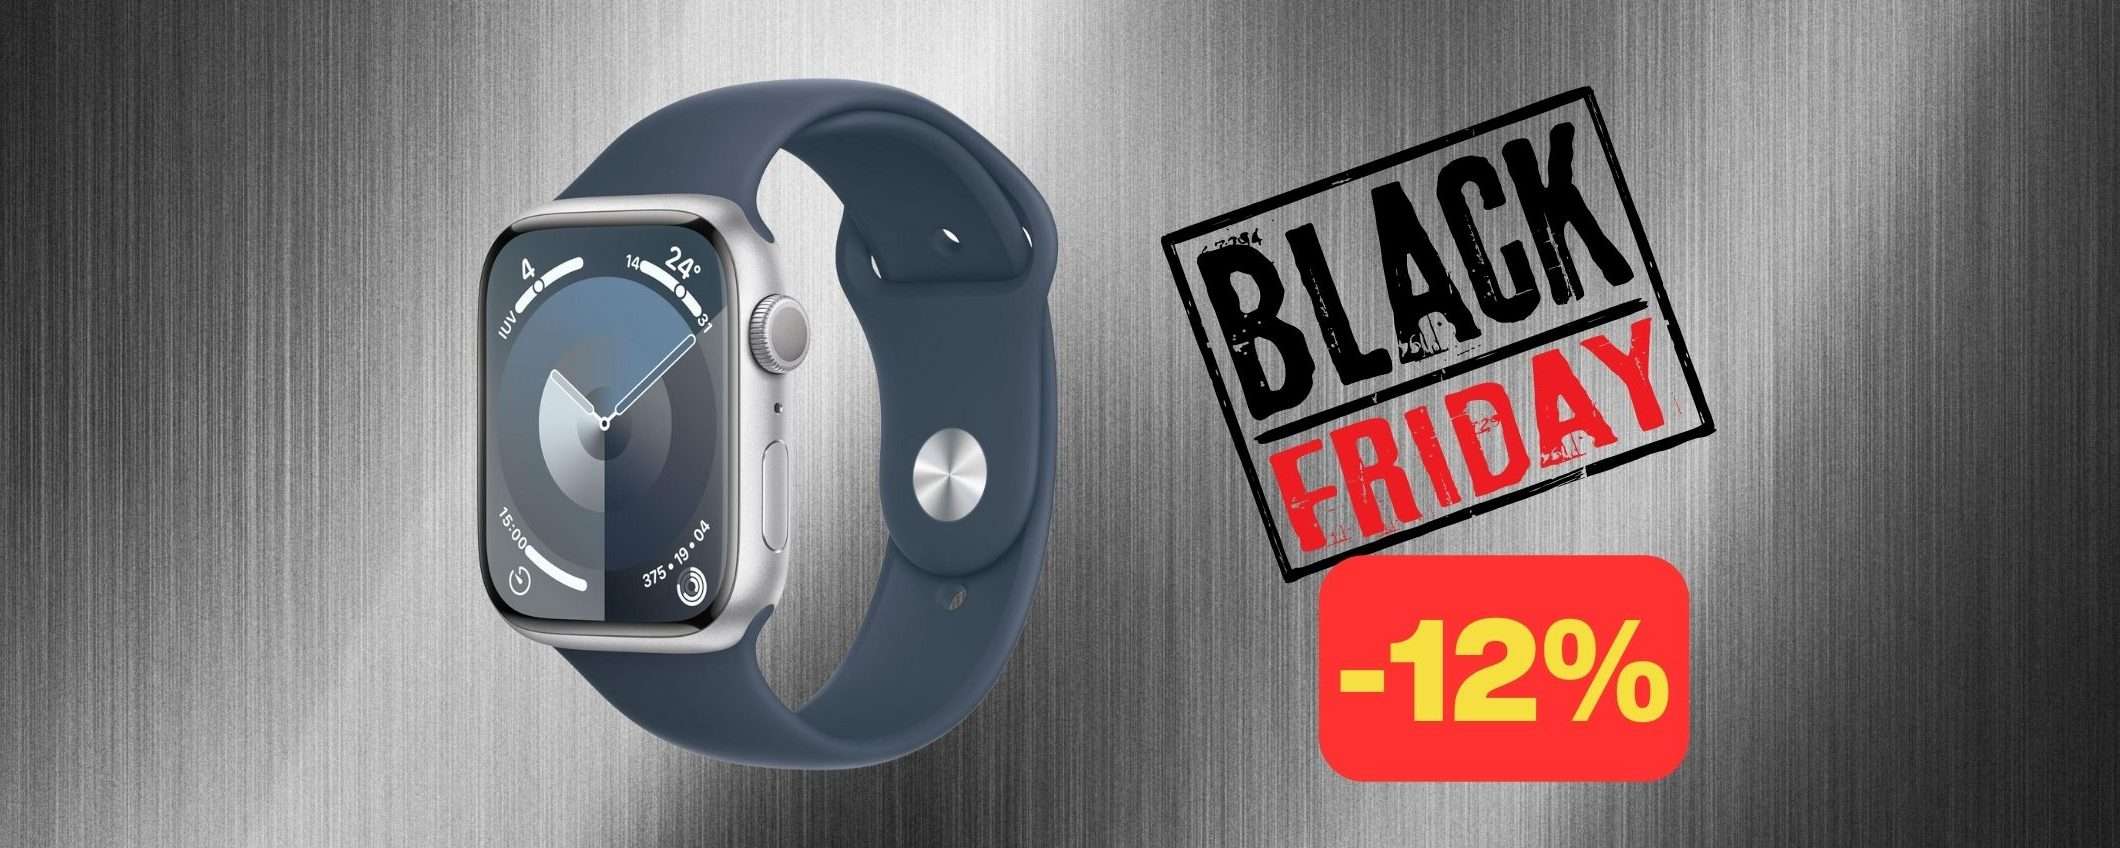 Apple Watch Series 9 al minimo storico Amazon per il Black Friday (-12%)